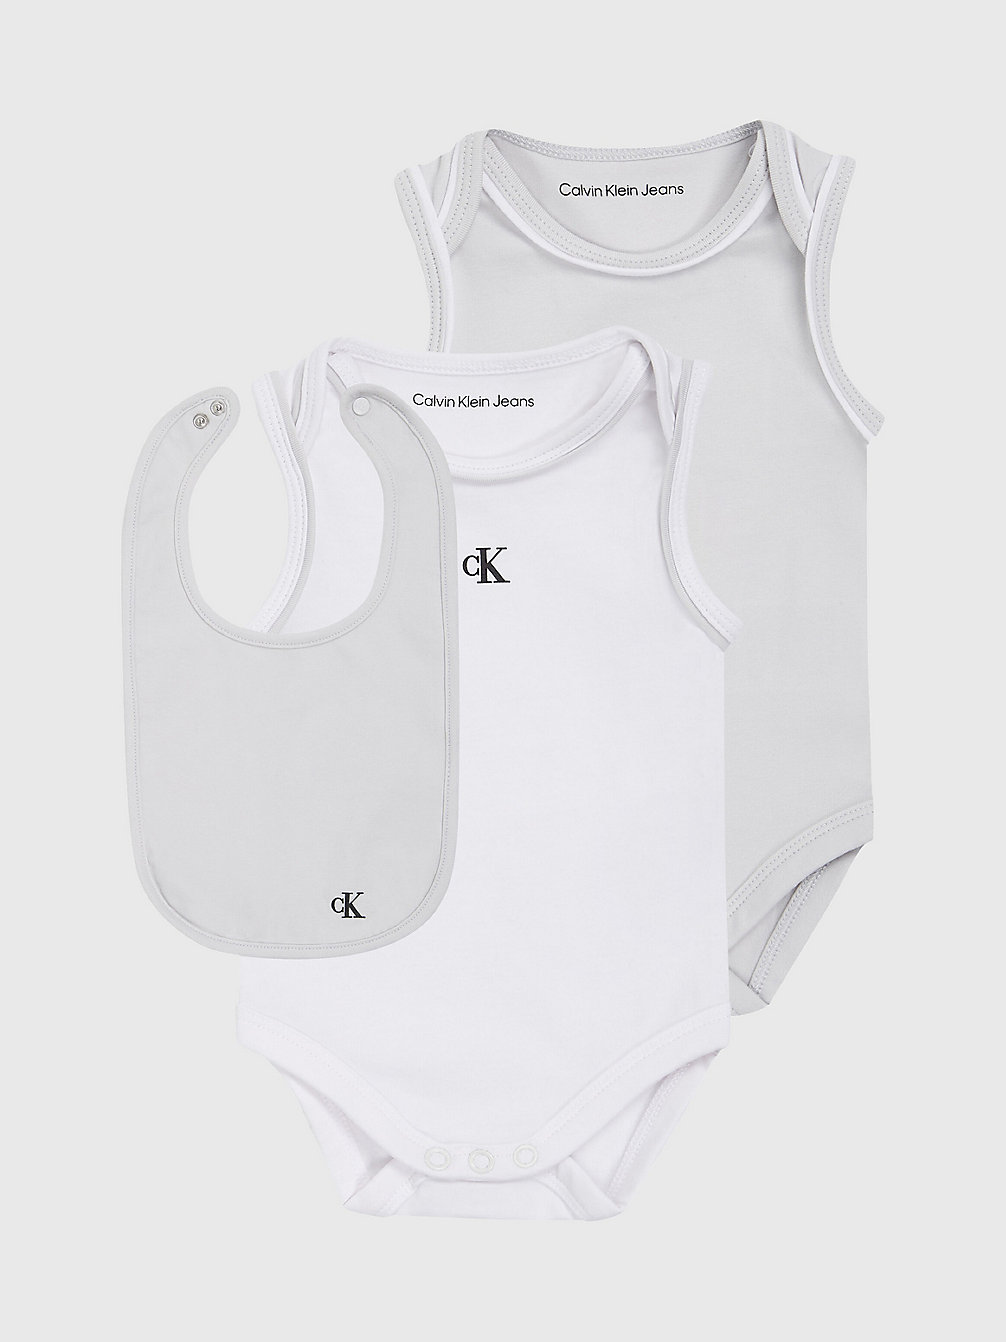 GHOST GREY / BRIGHT WHITE Cadeauset Newborn Bodysuit En Slab undefined newborn Calvin Klein